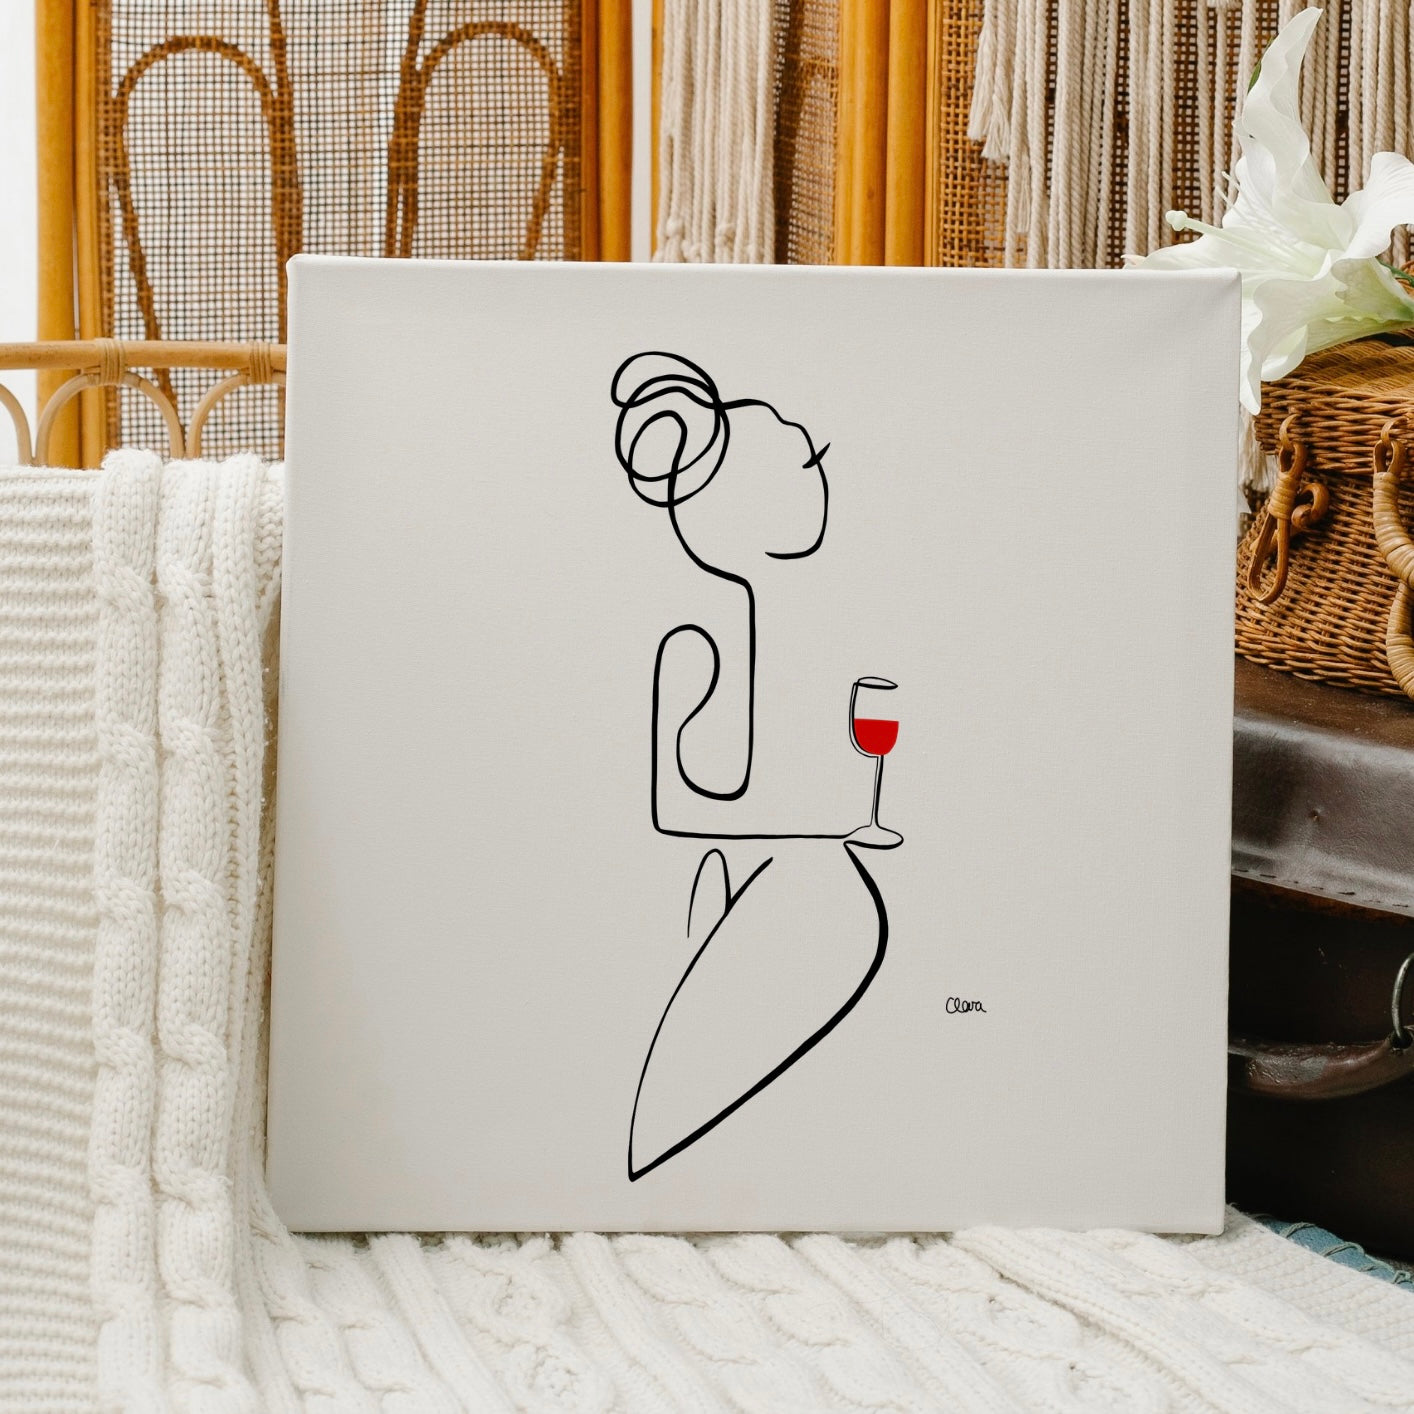 Frauen am Weinen Nr. 5-Kunst-JUDITH CLARA-30x40 cm (zartweiß) Papier 300g-one-line-art